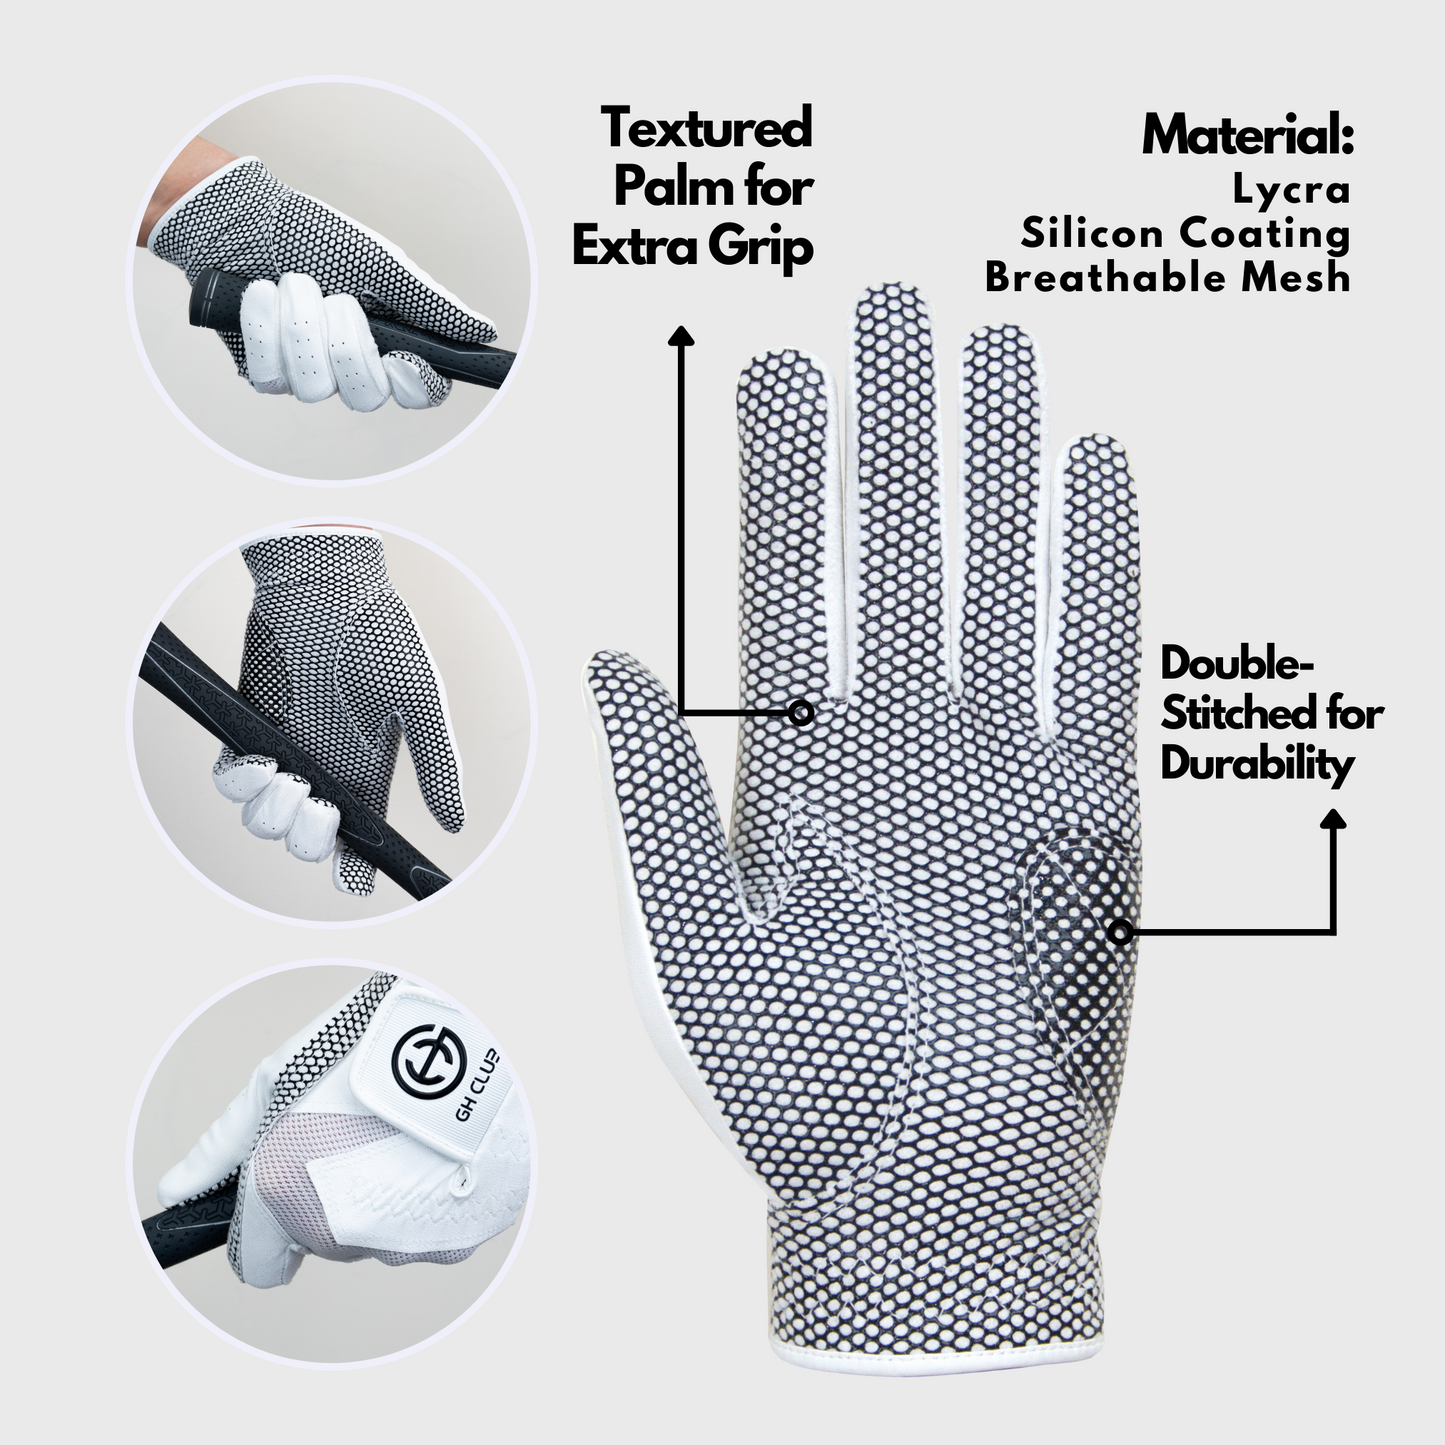 [GH] Men's Two Left Hand Golf Gloves